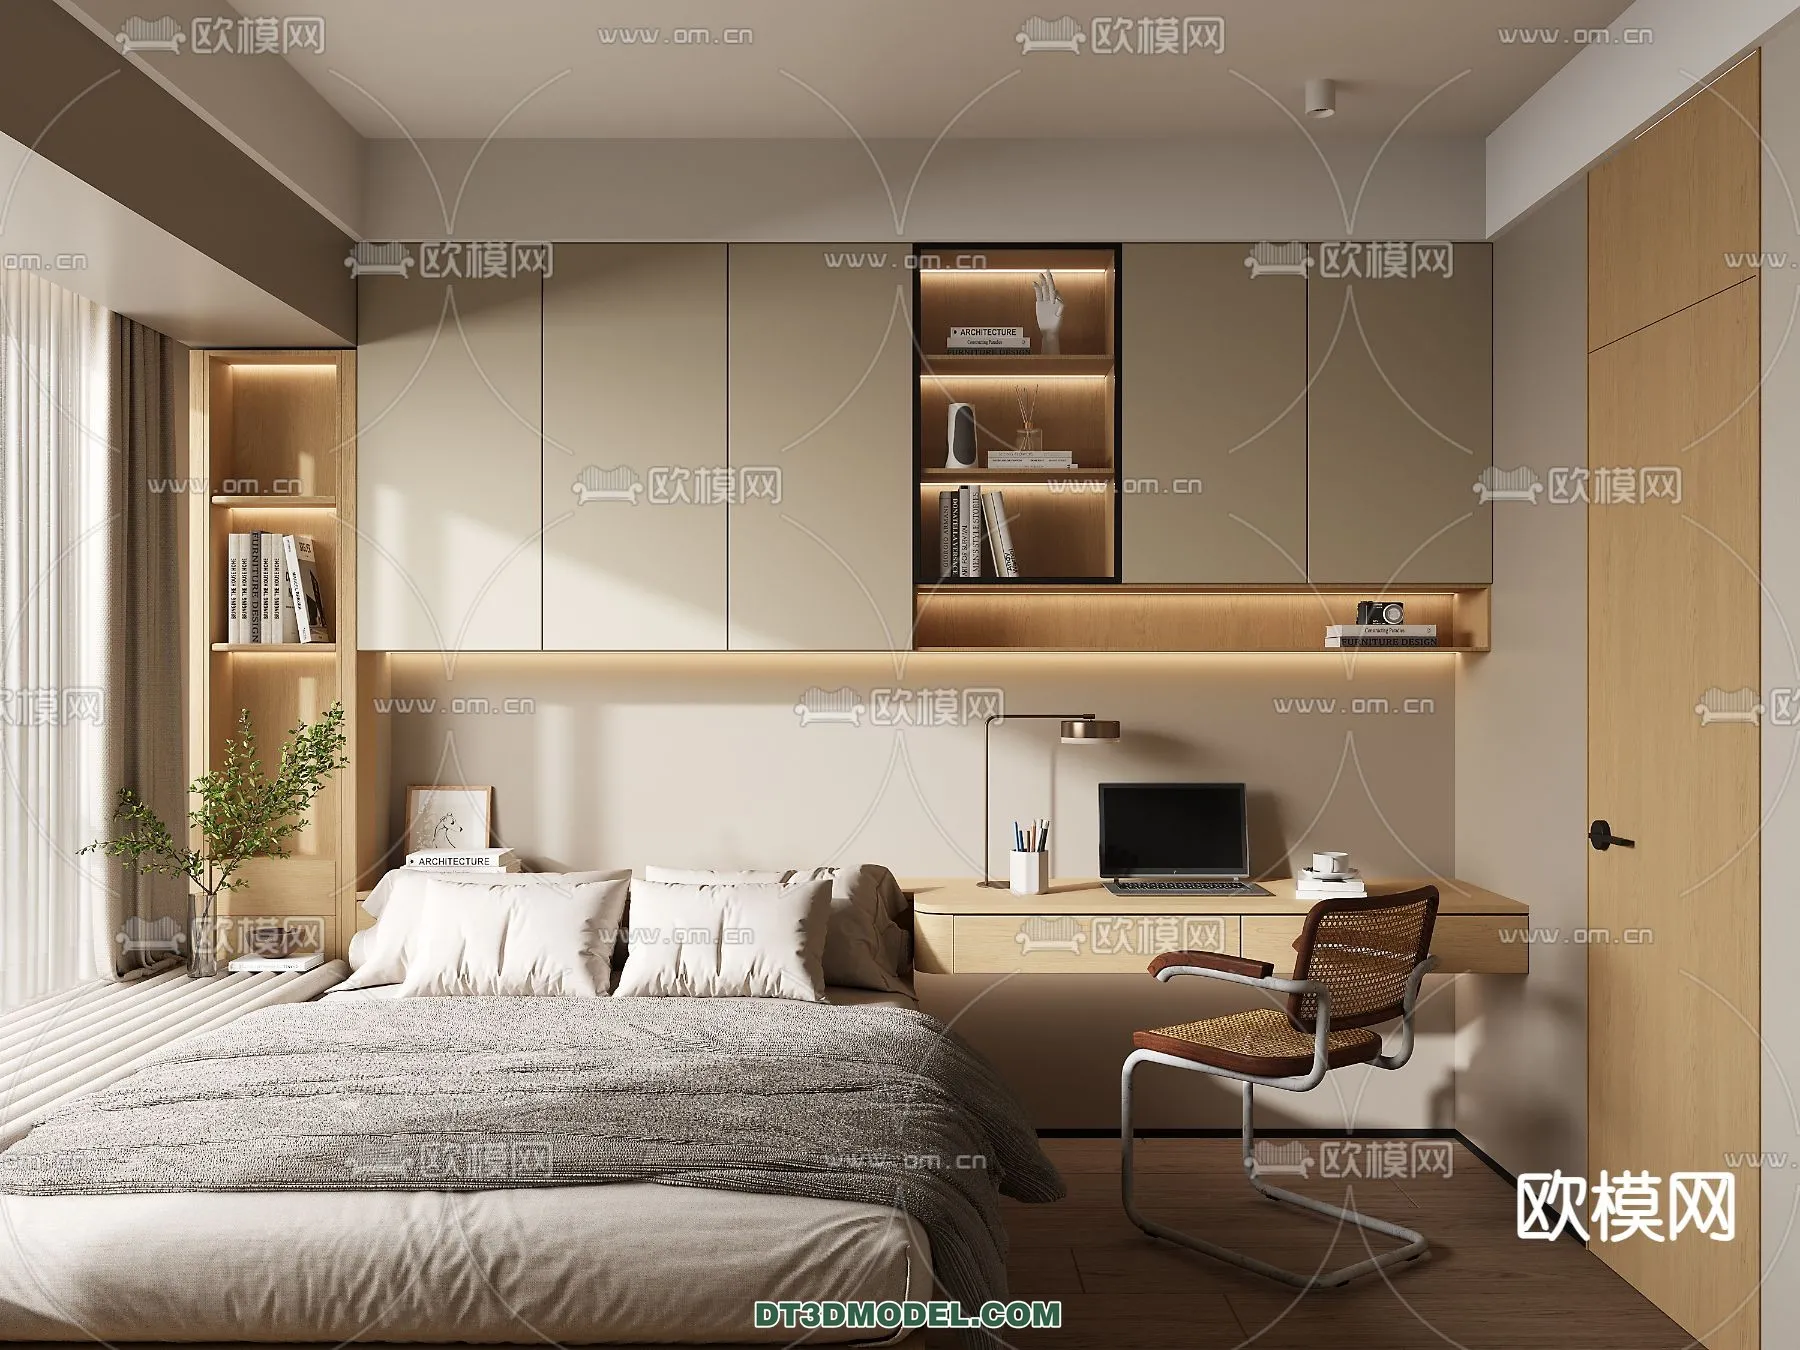 Tatami Bedroom – Japan Bedroom – 3D Scene – 021